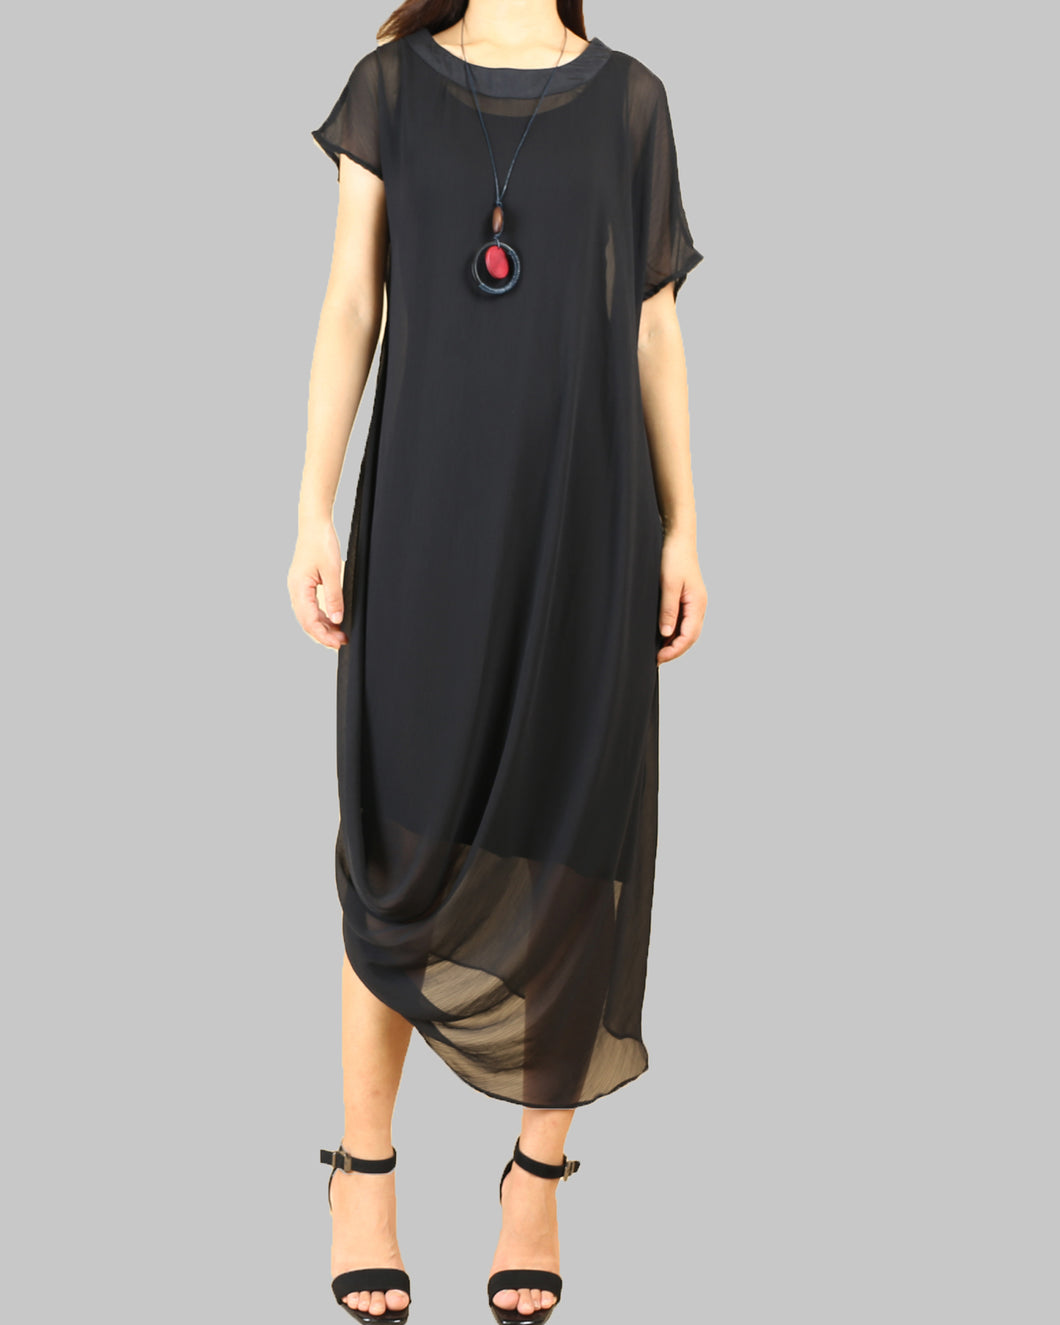 Women pleated chiffon dress set/crew neck dress/modal cotton dress/short sleeve dress/asymmetrical dress(Q1515)